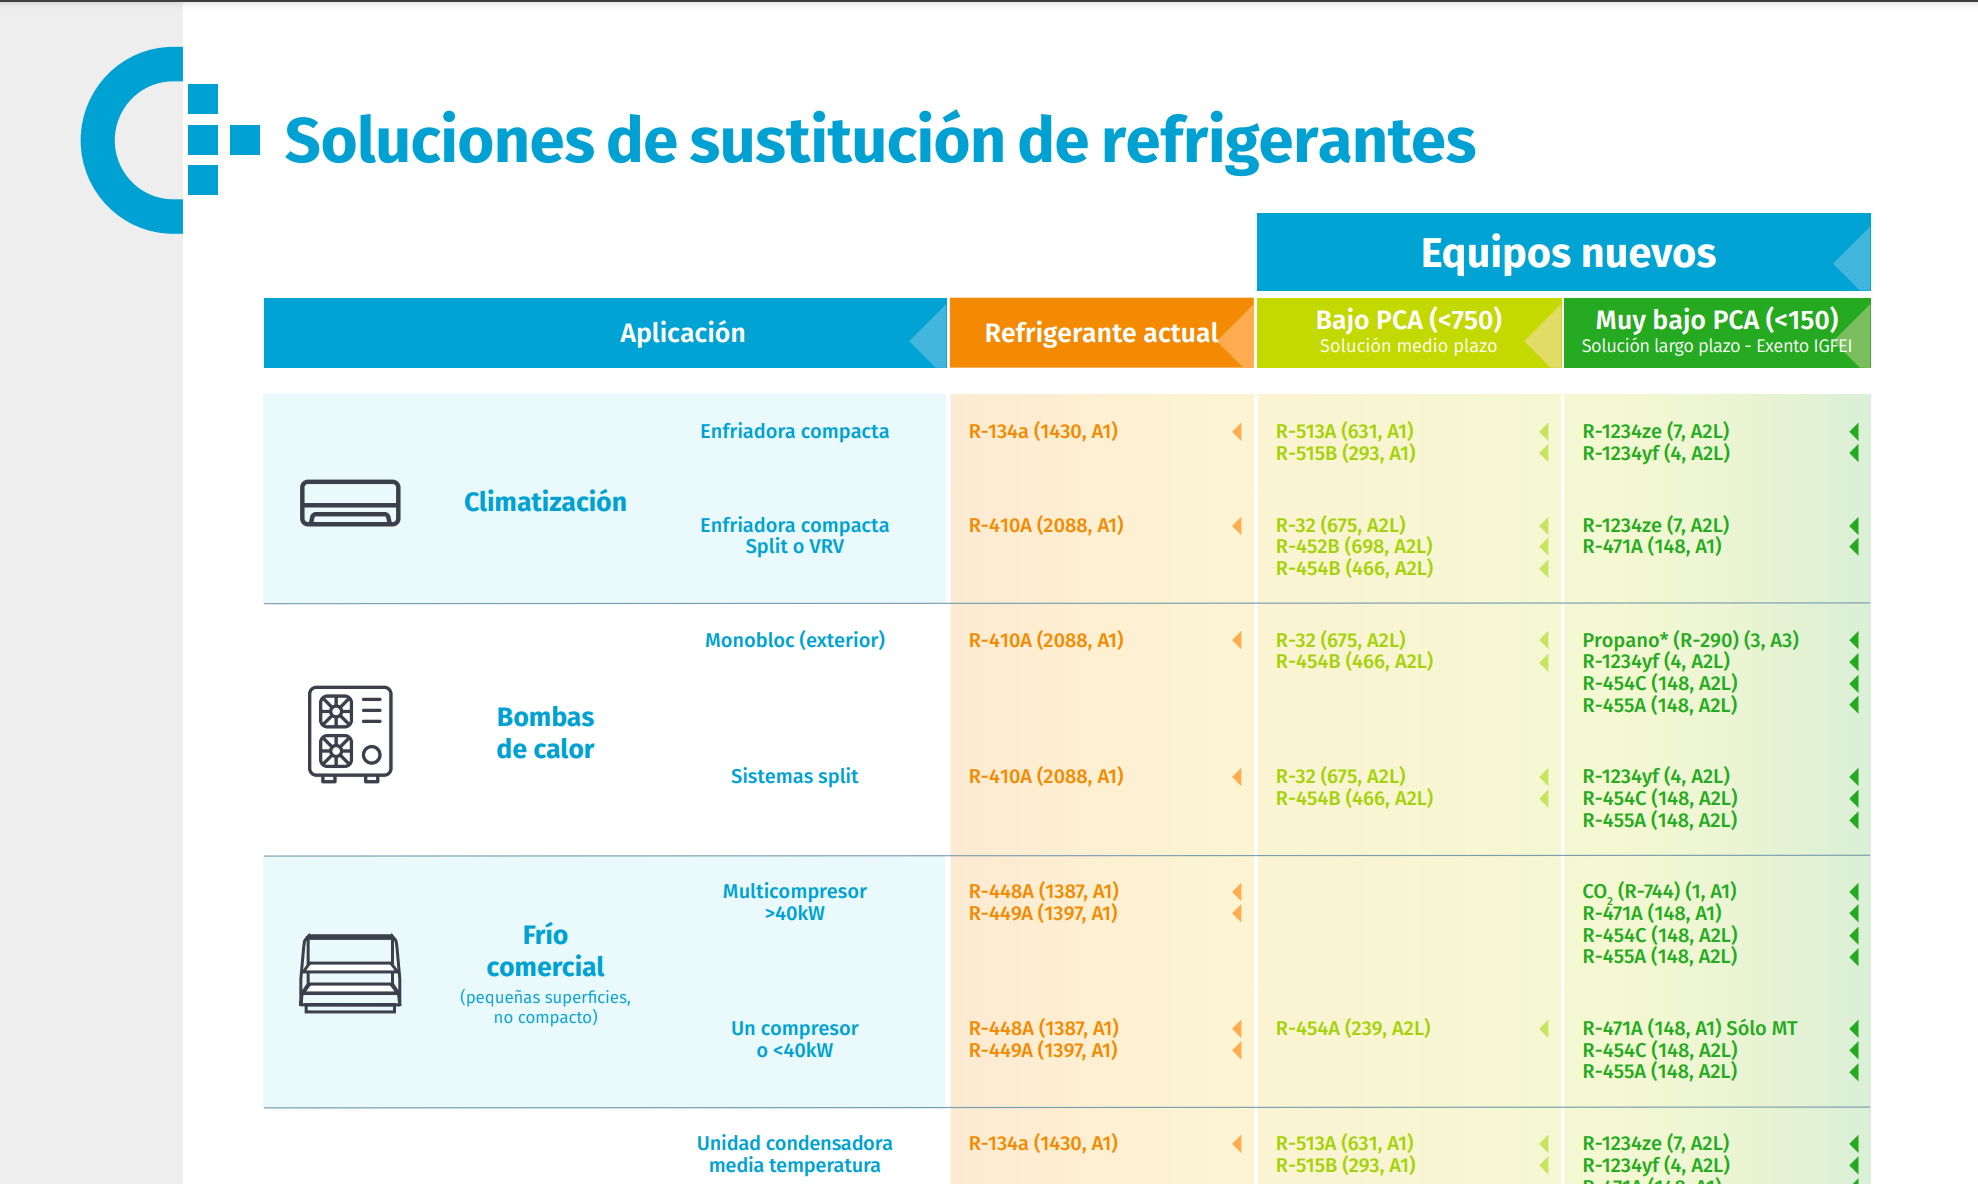 Nueva herramienta: tabla de sustitución de refrigerantes